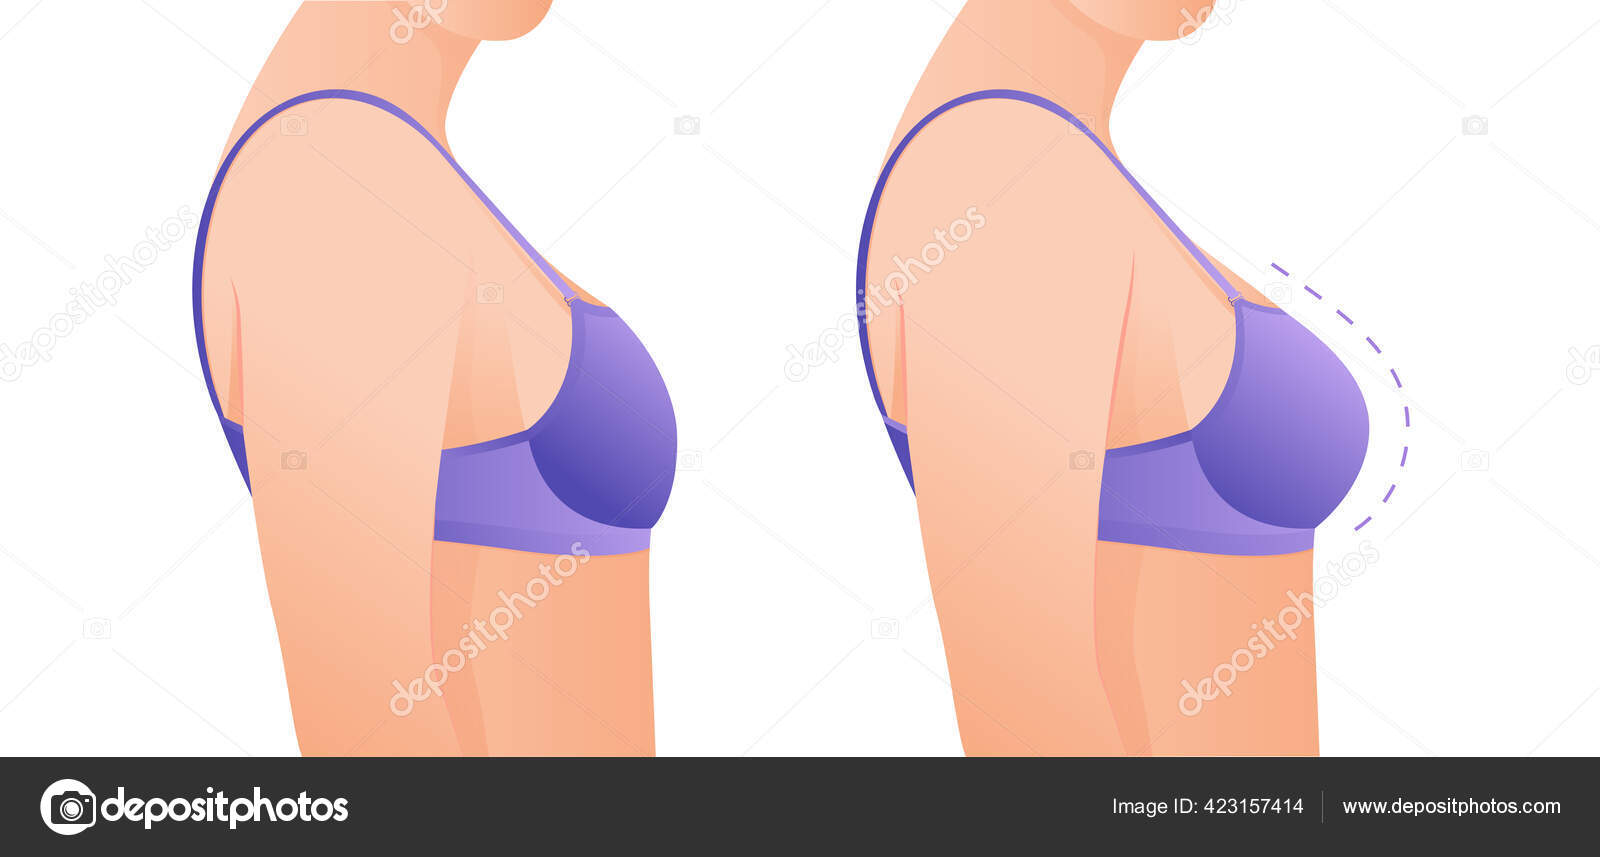 Kvindelige Bryster Før Augmentation Bryst Størrelse Korrektion Plastikkirurgi Conct Stock-vektor ©vipicreate@gmail.com 423157414